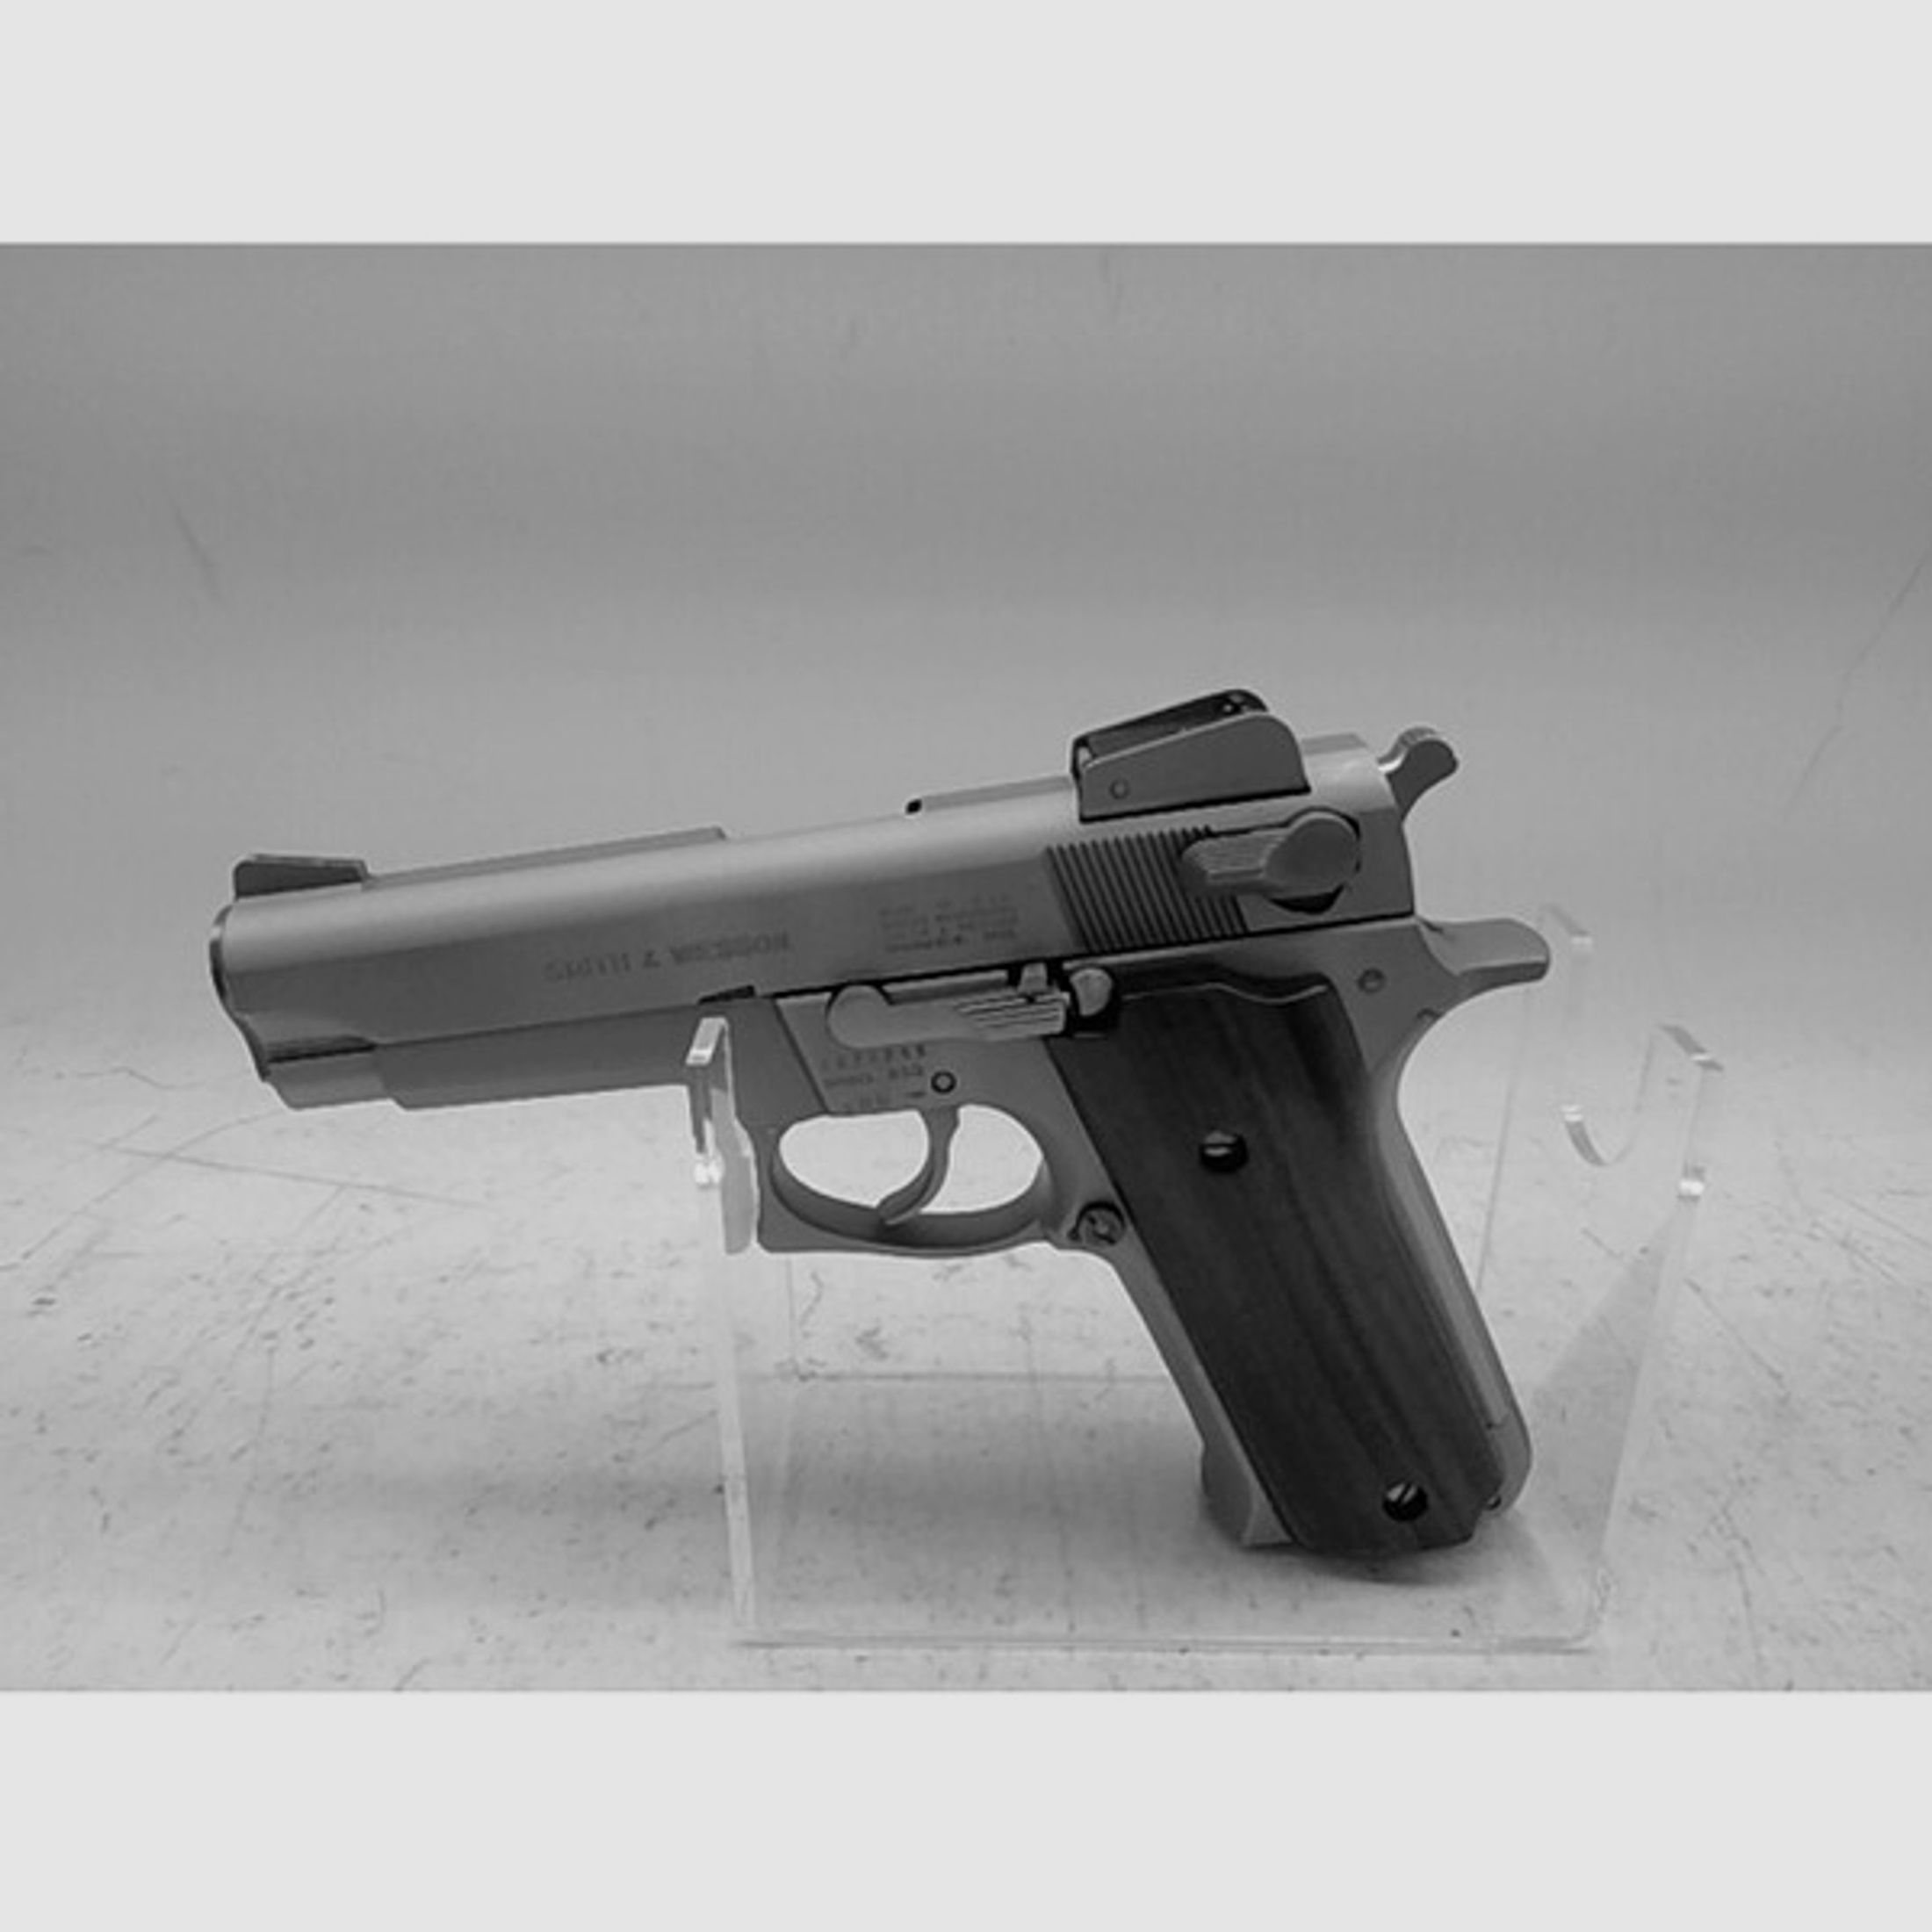 Pistole Smith & Wesson Mod.659 im Kaliber 9mm Luger gebraucht